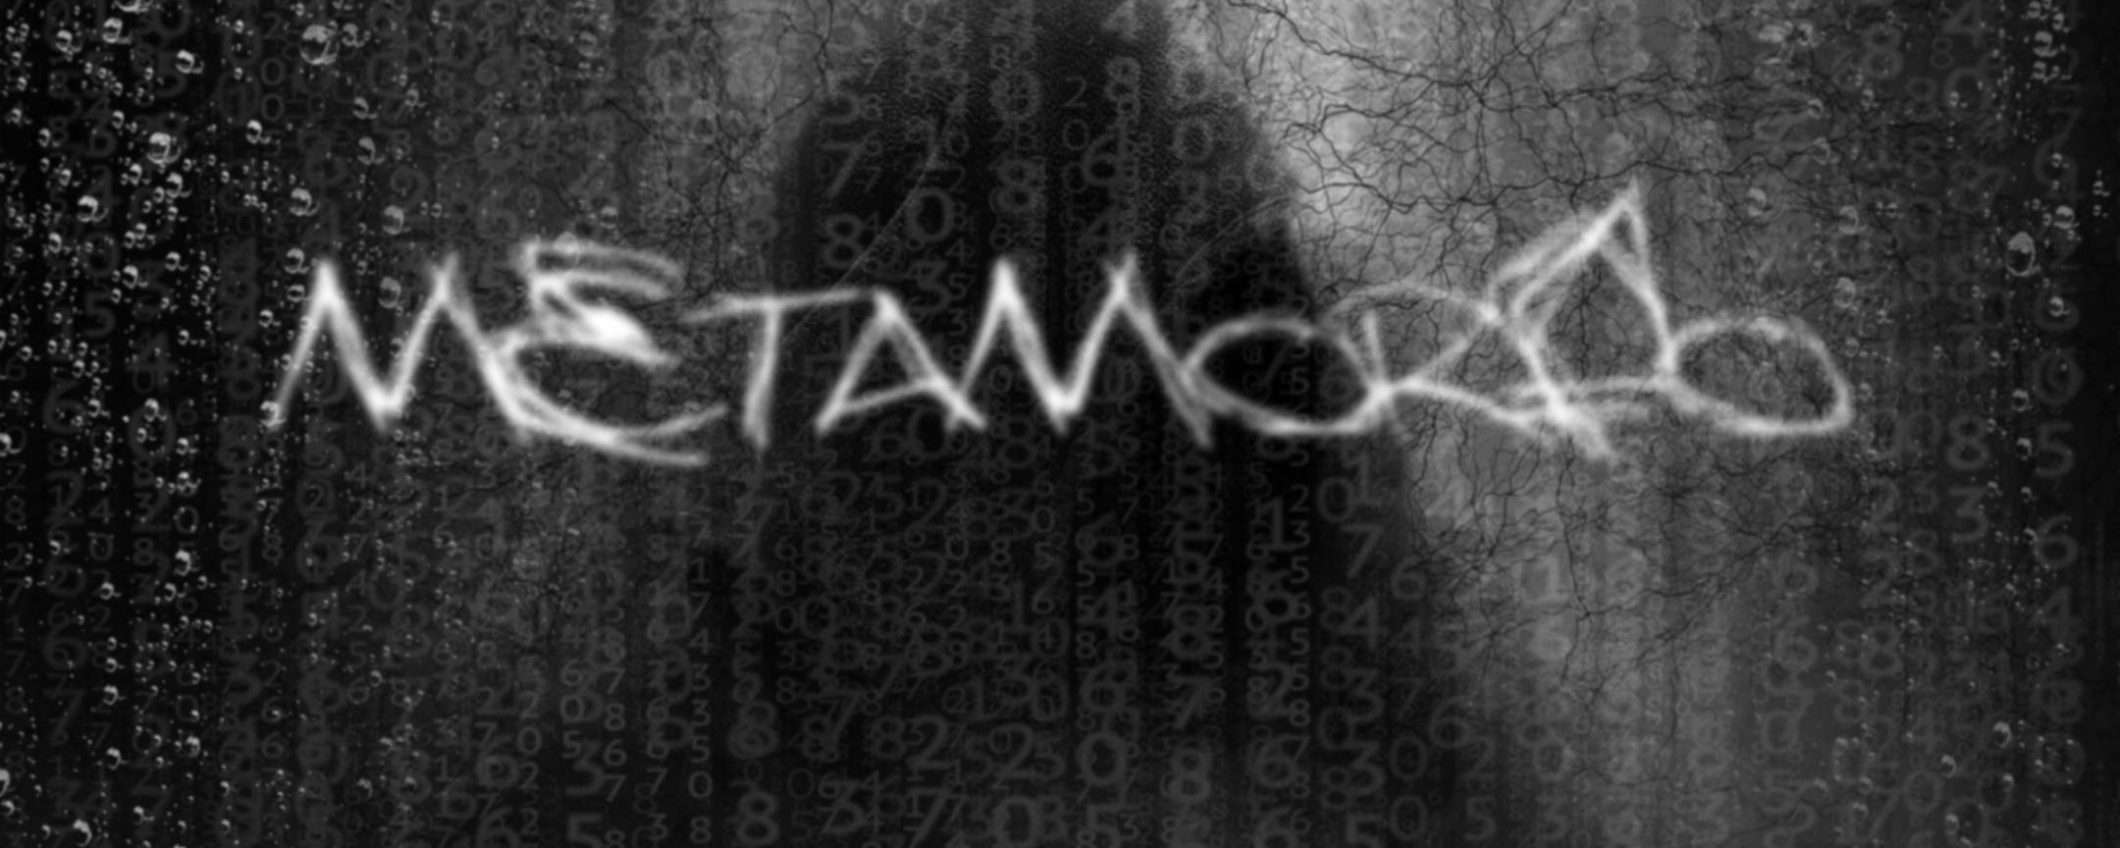 Metamorfo: il malware scoperto da Bitdefender